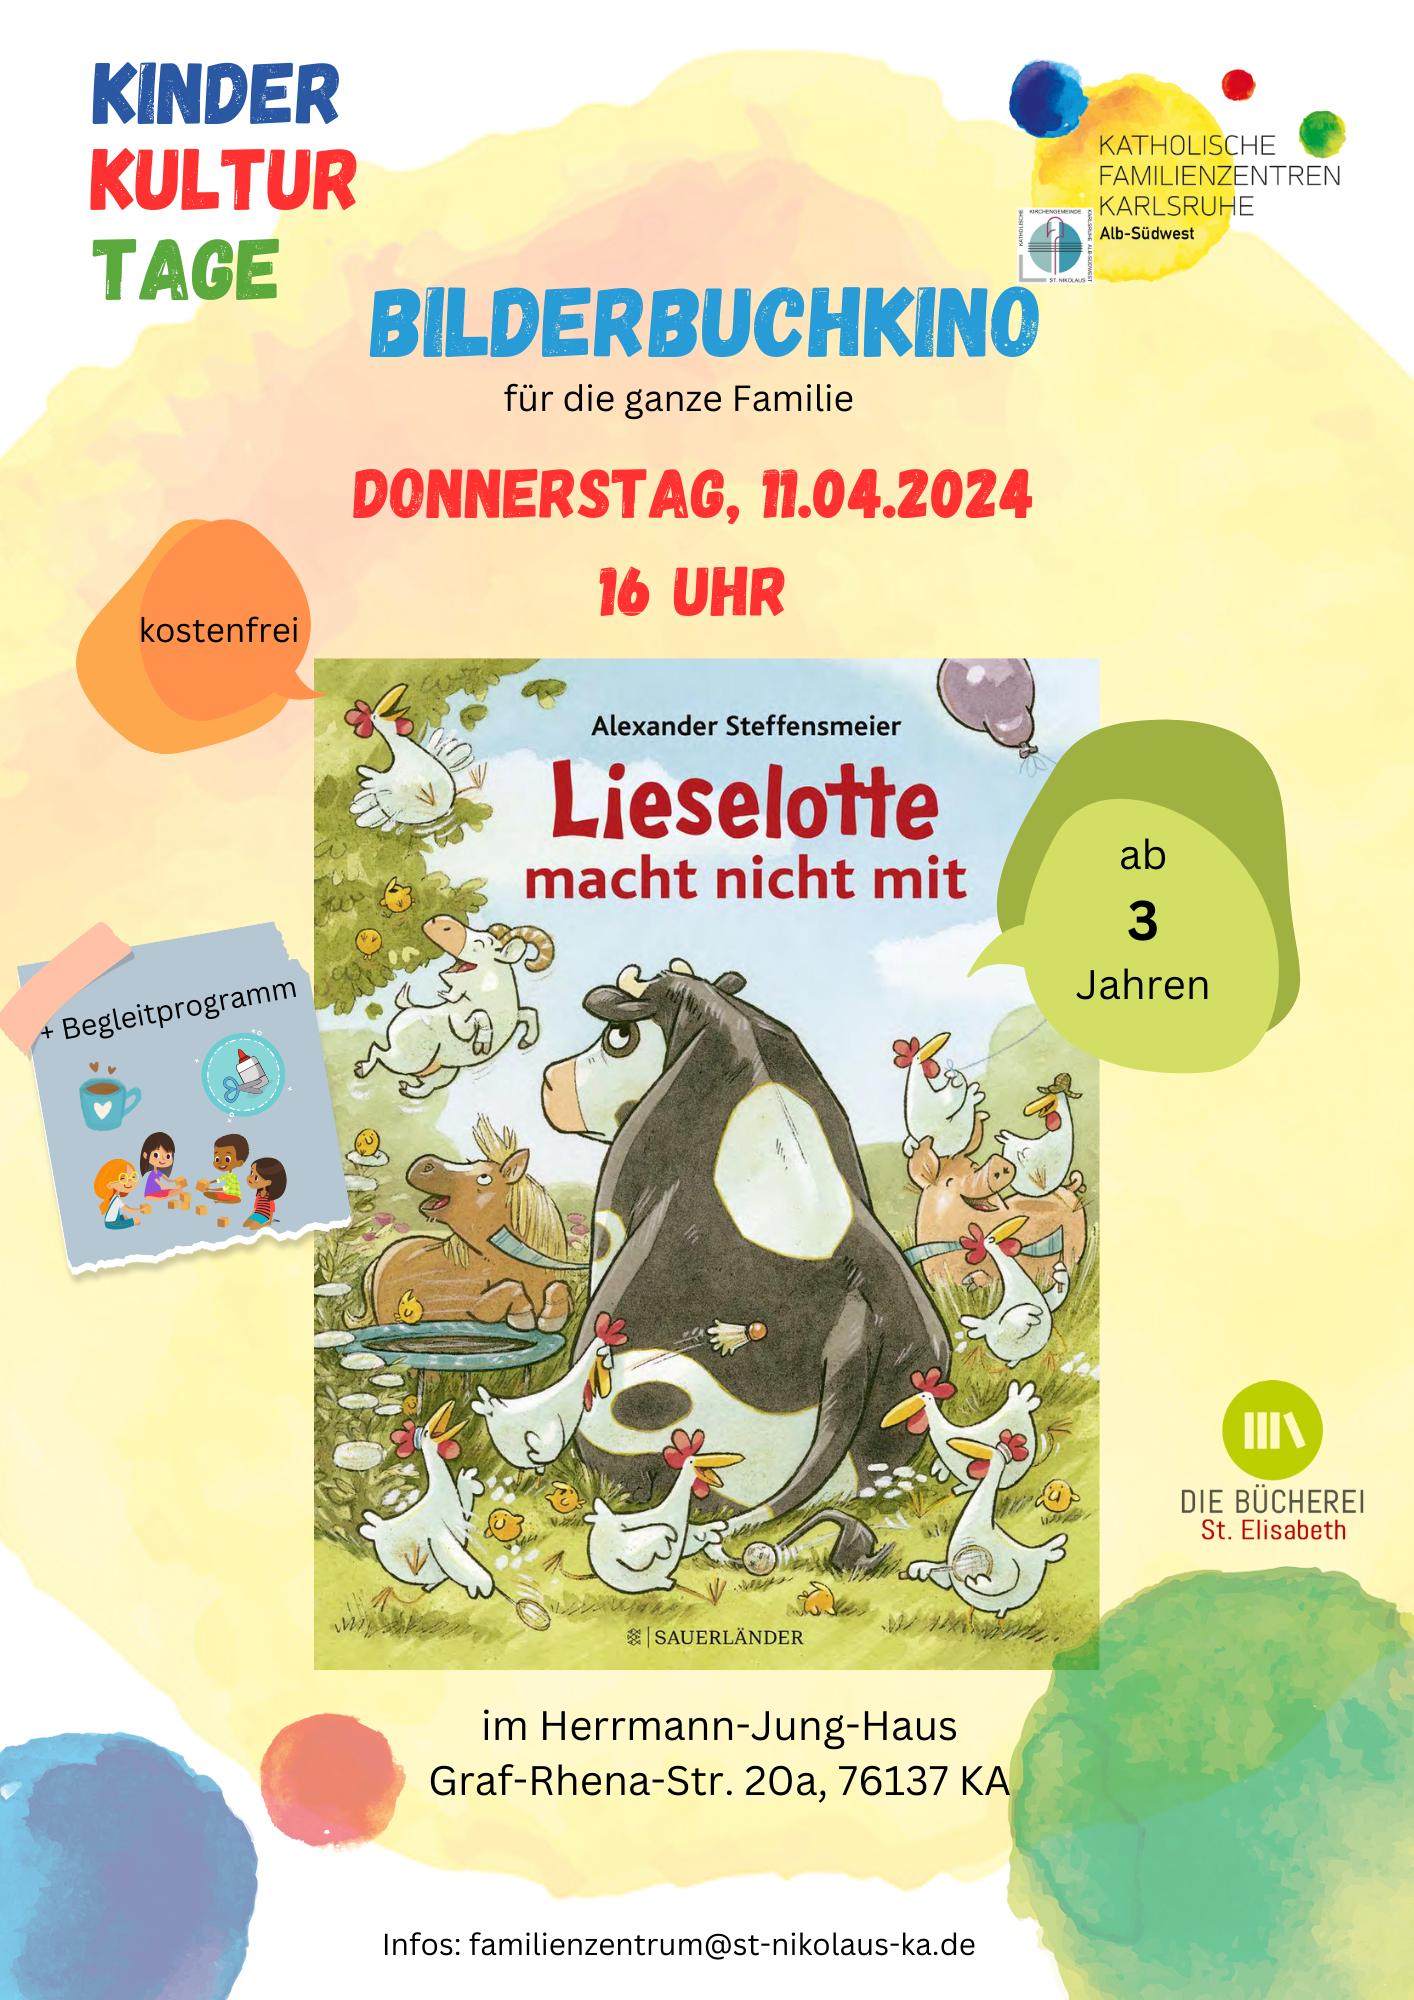 Bilderbuchkino | KinderKulturTage der Kath. Familienzentren